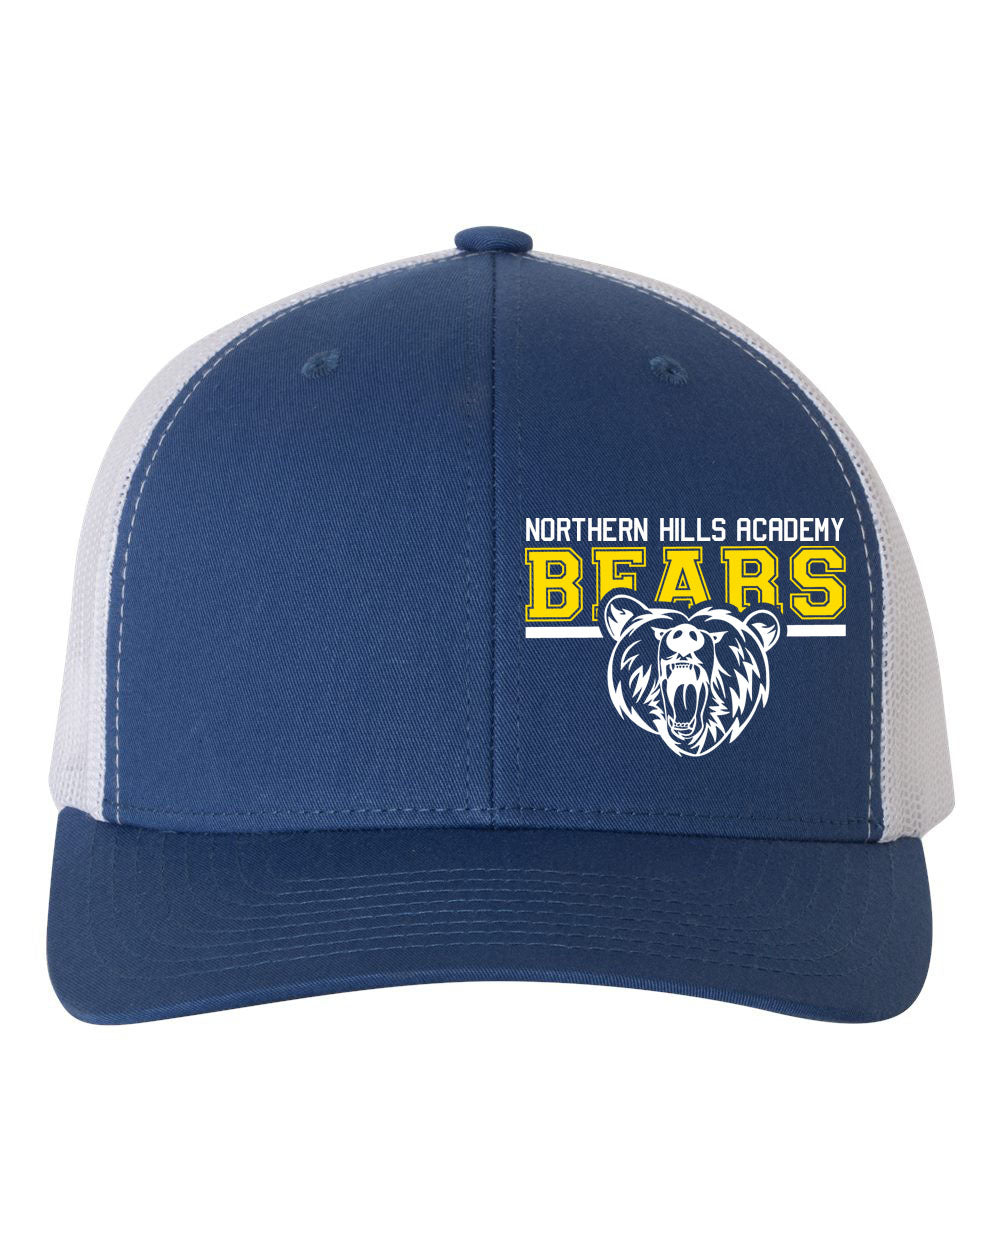 NH Bears Trucker Hat